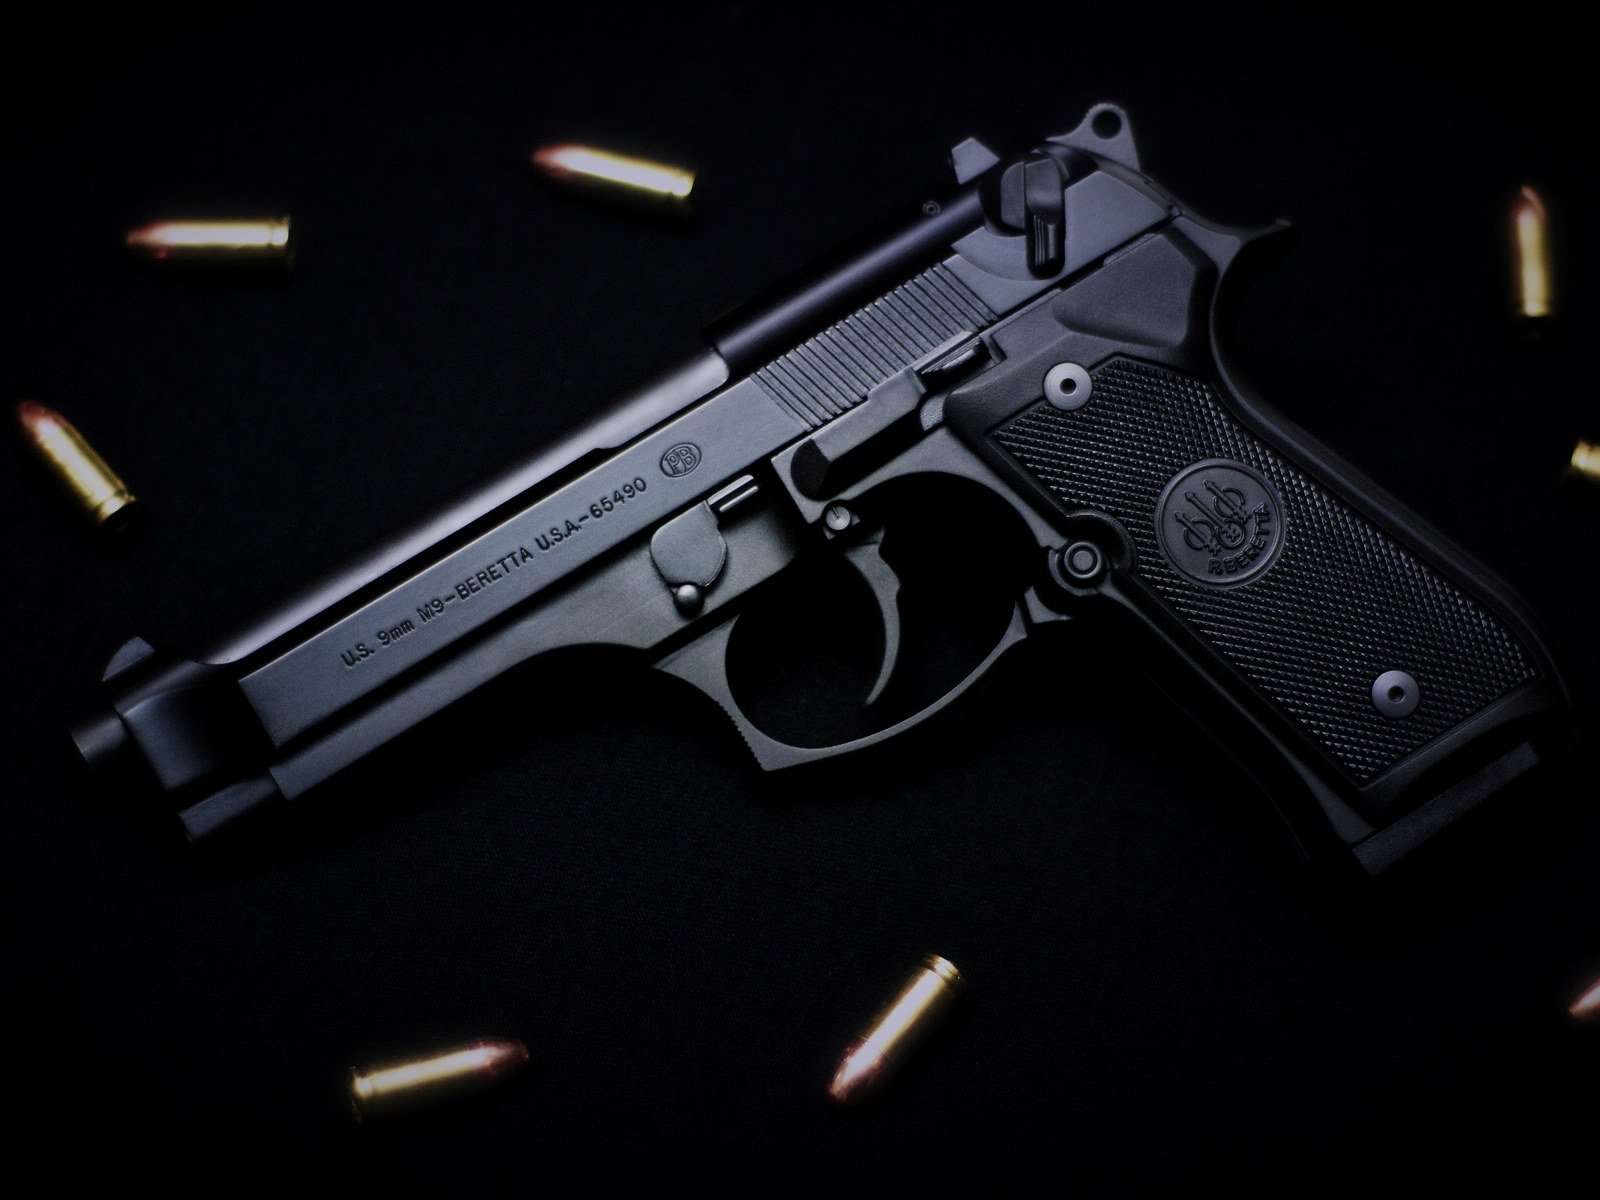 Beretta M9 pistol Widescreen HD Wallpapers 1600x1200 hd Other